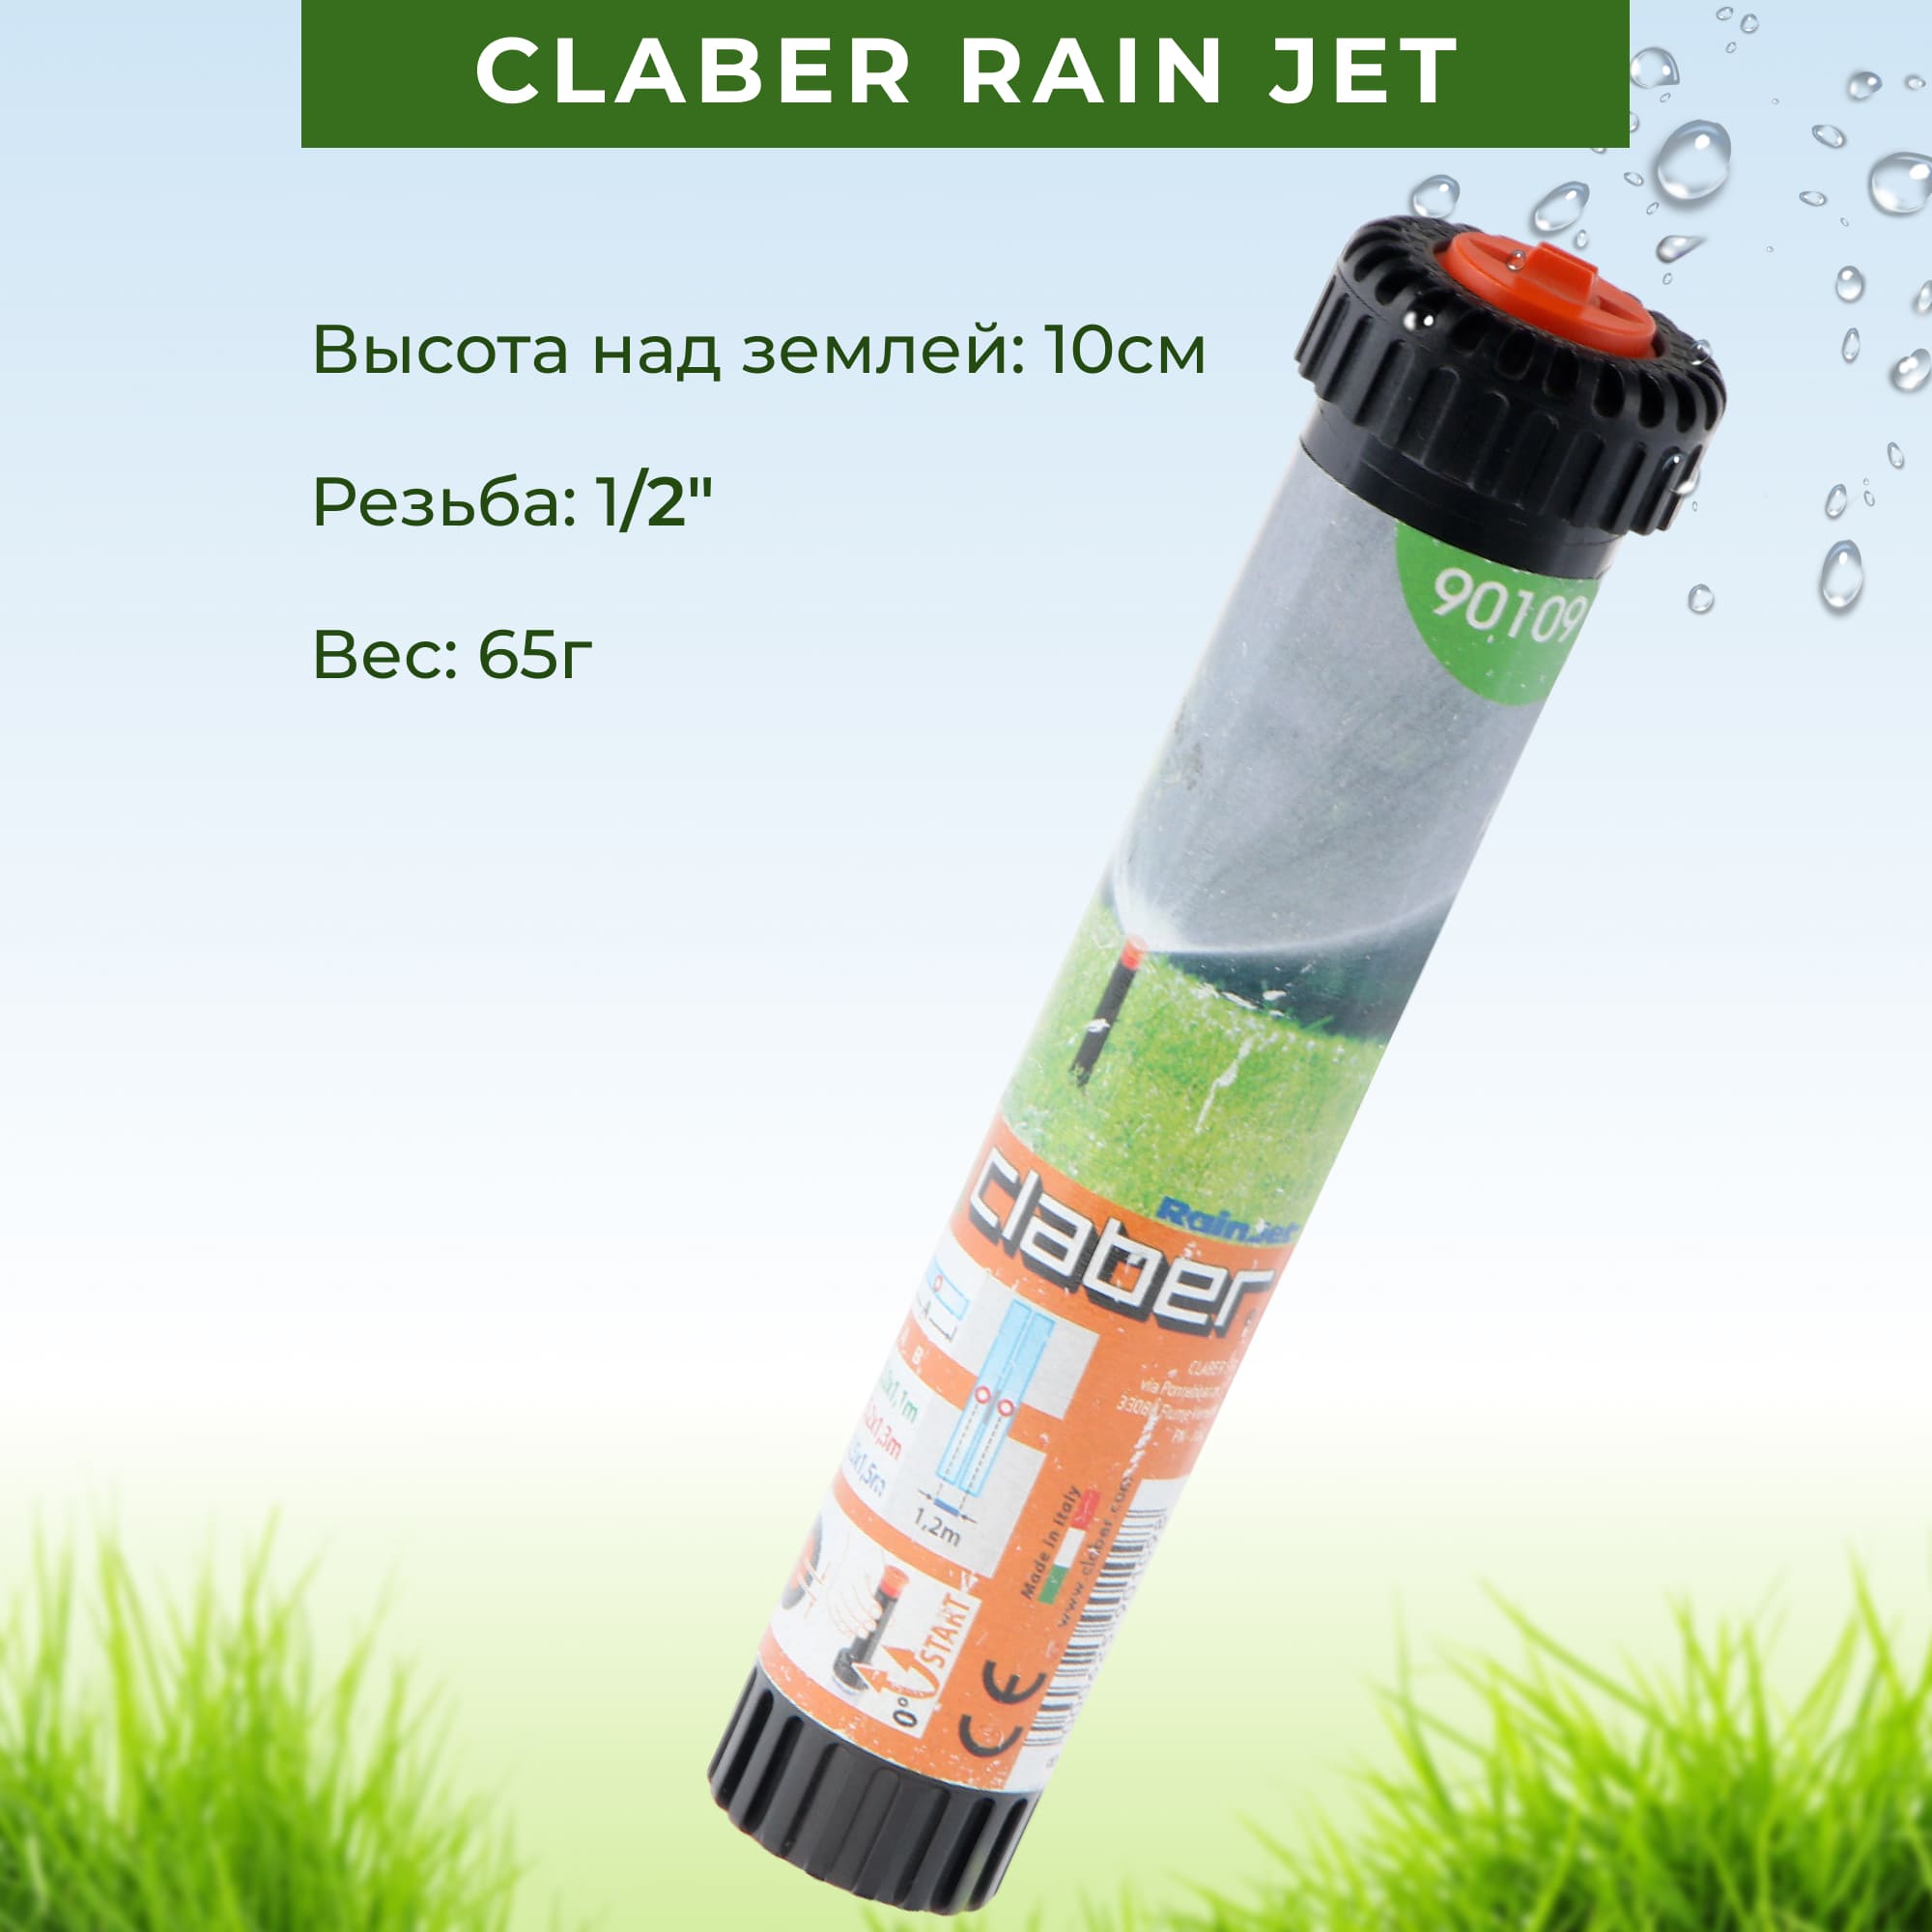 Дождеватель выдвижной Claber rain jet 90109, цвет черный - фото 4